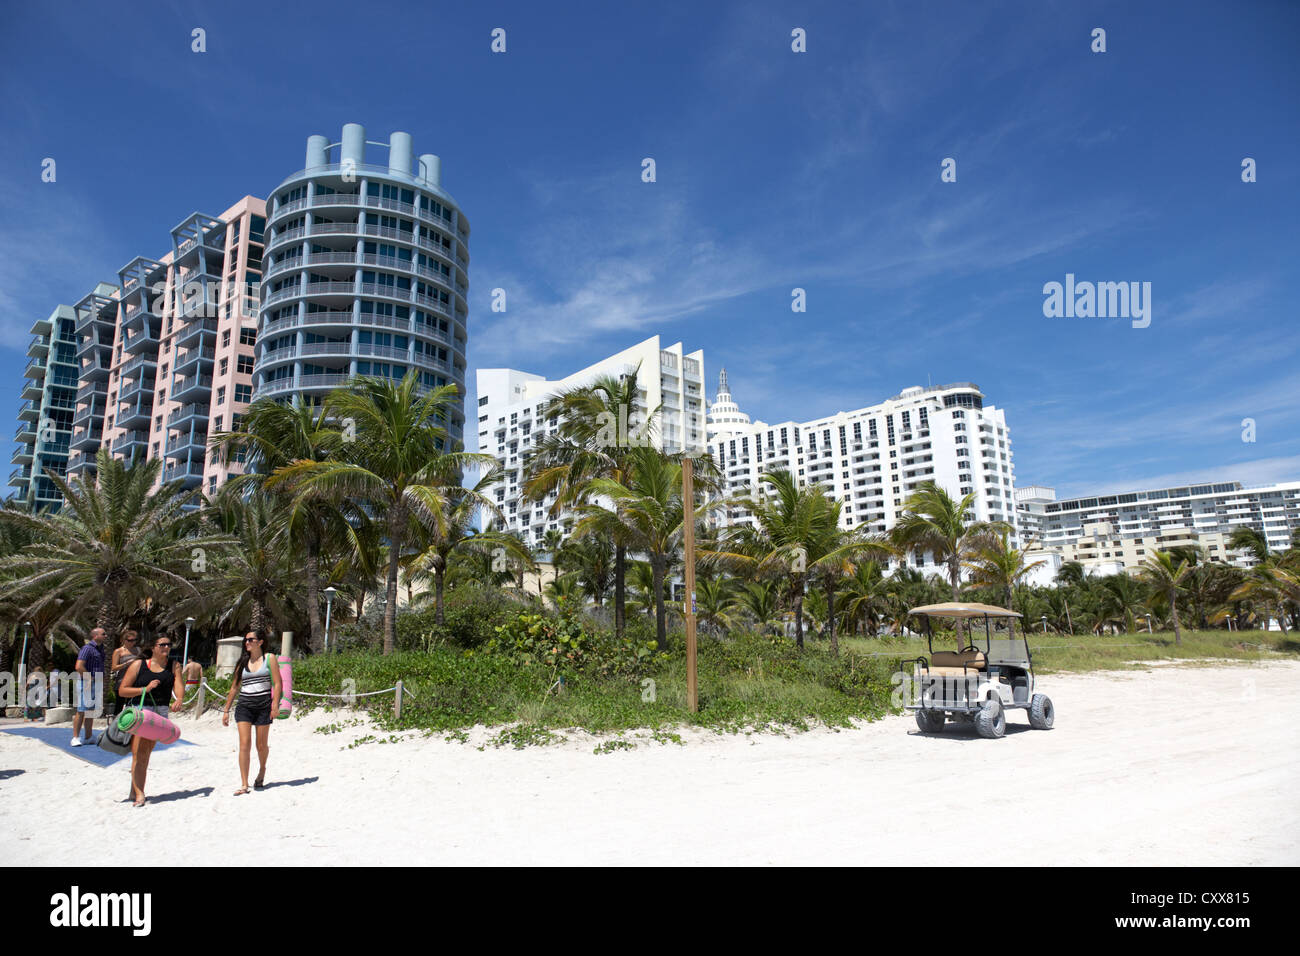 Propriétés en bord de Miami South beach floride usa Banque D'Images